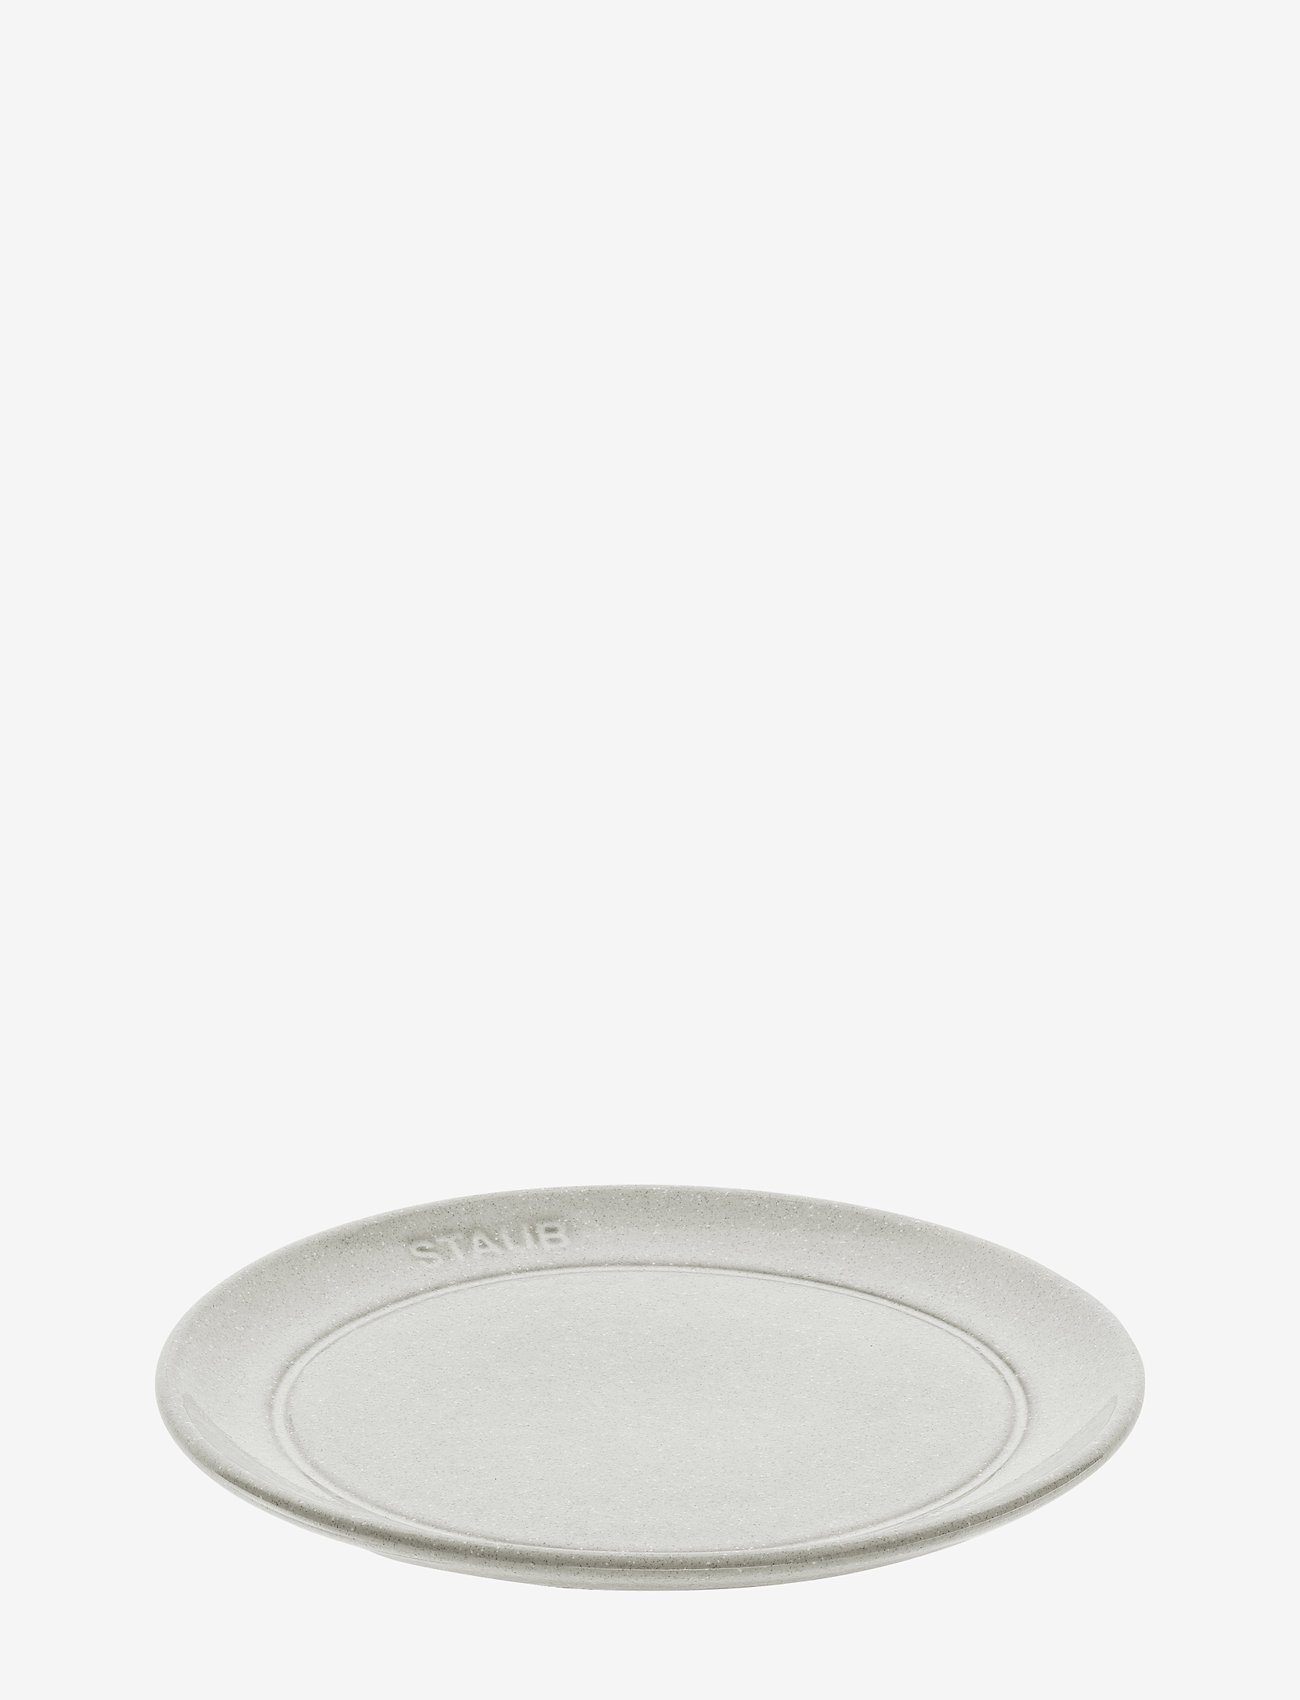 STAUB - Staub, Plate flat 15 cm, white truffle - mažiausios kainos - grey - 0